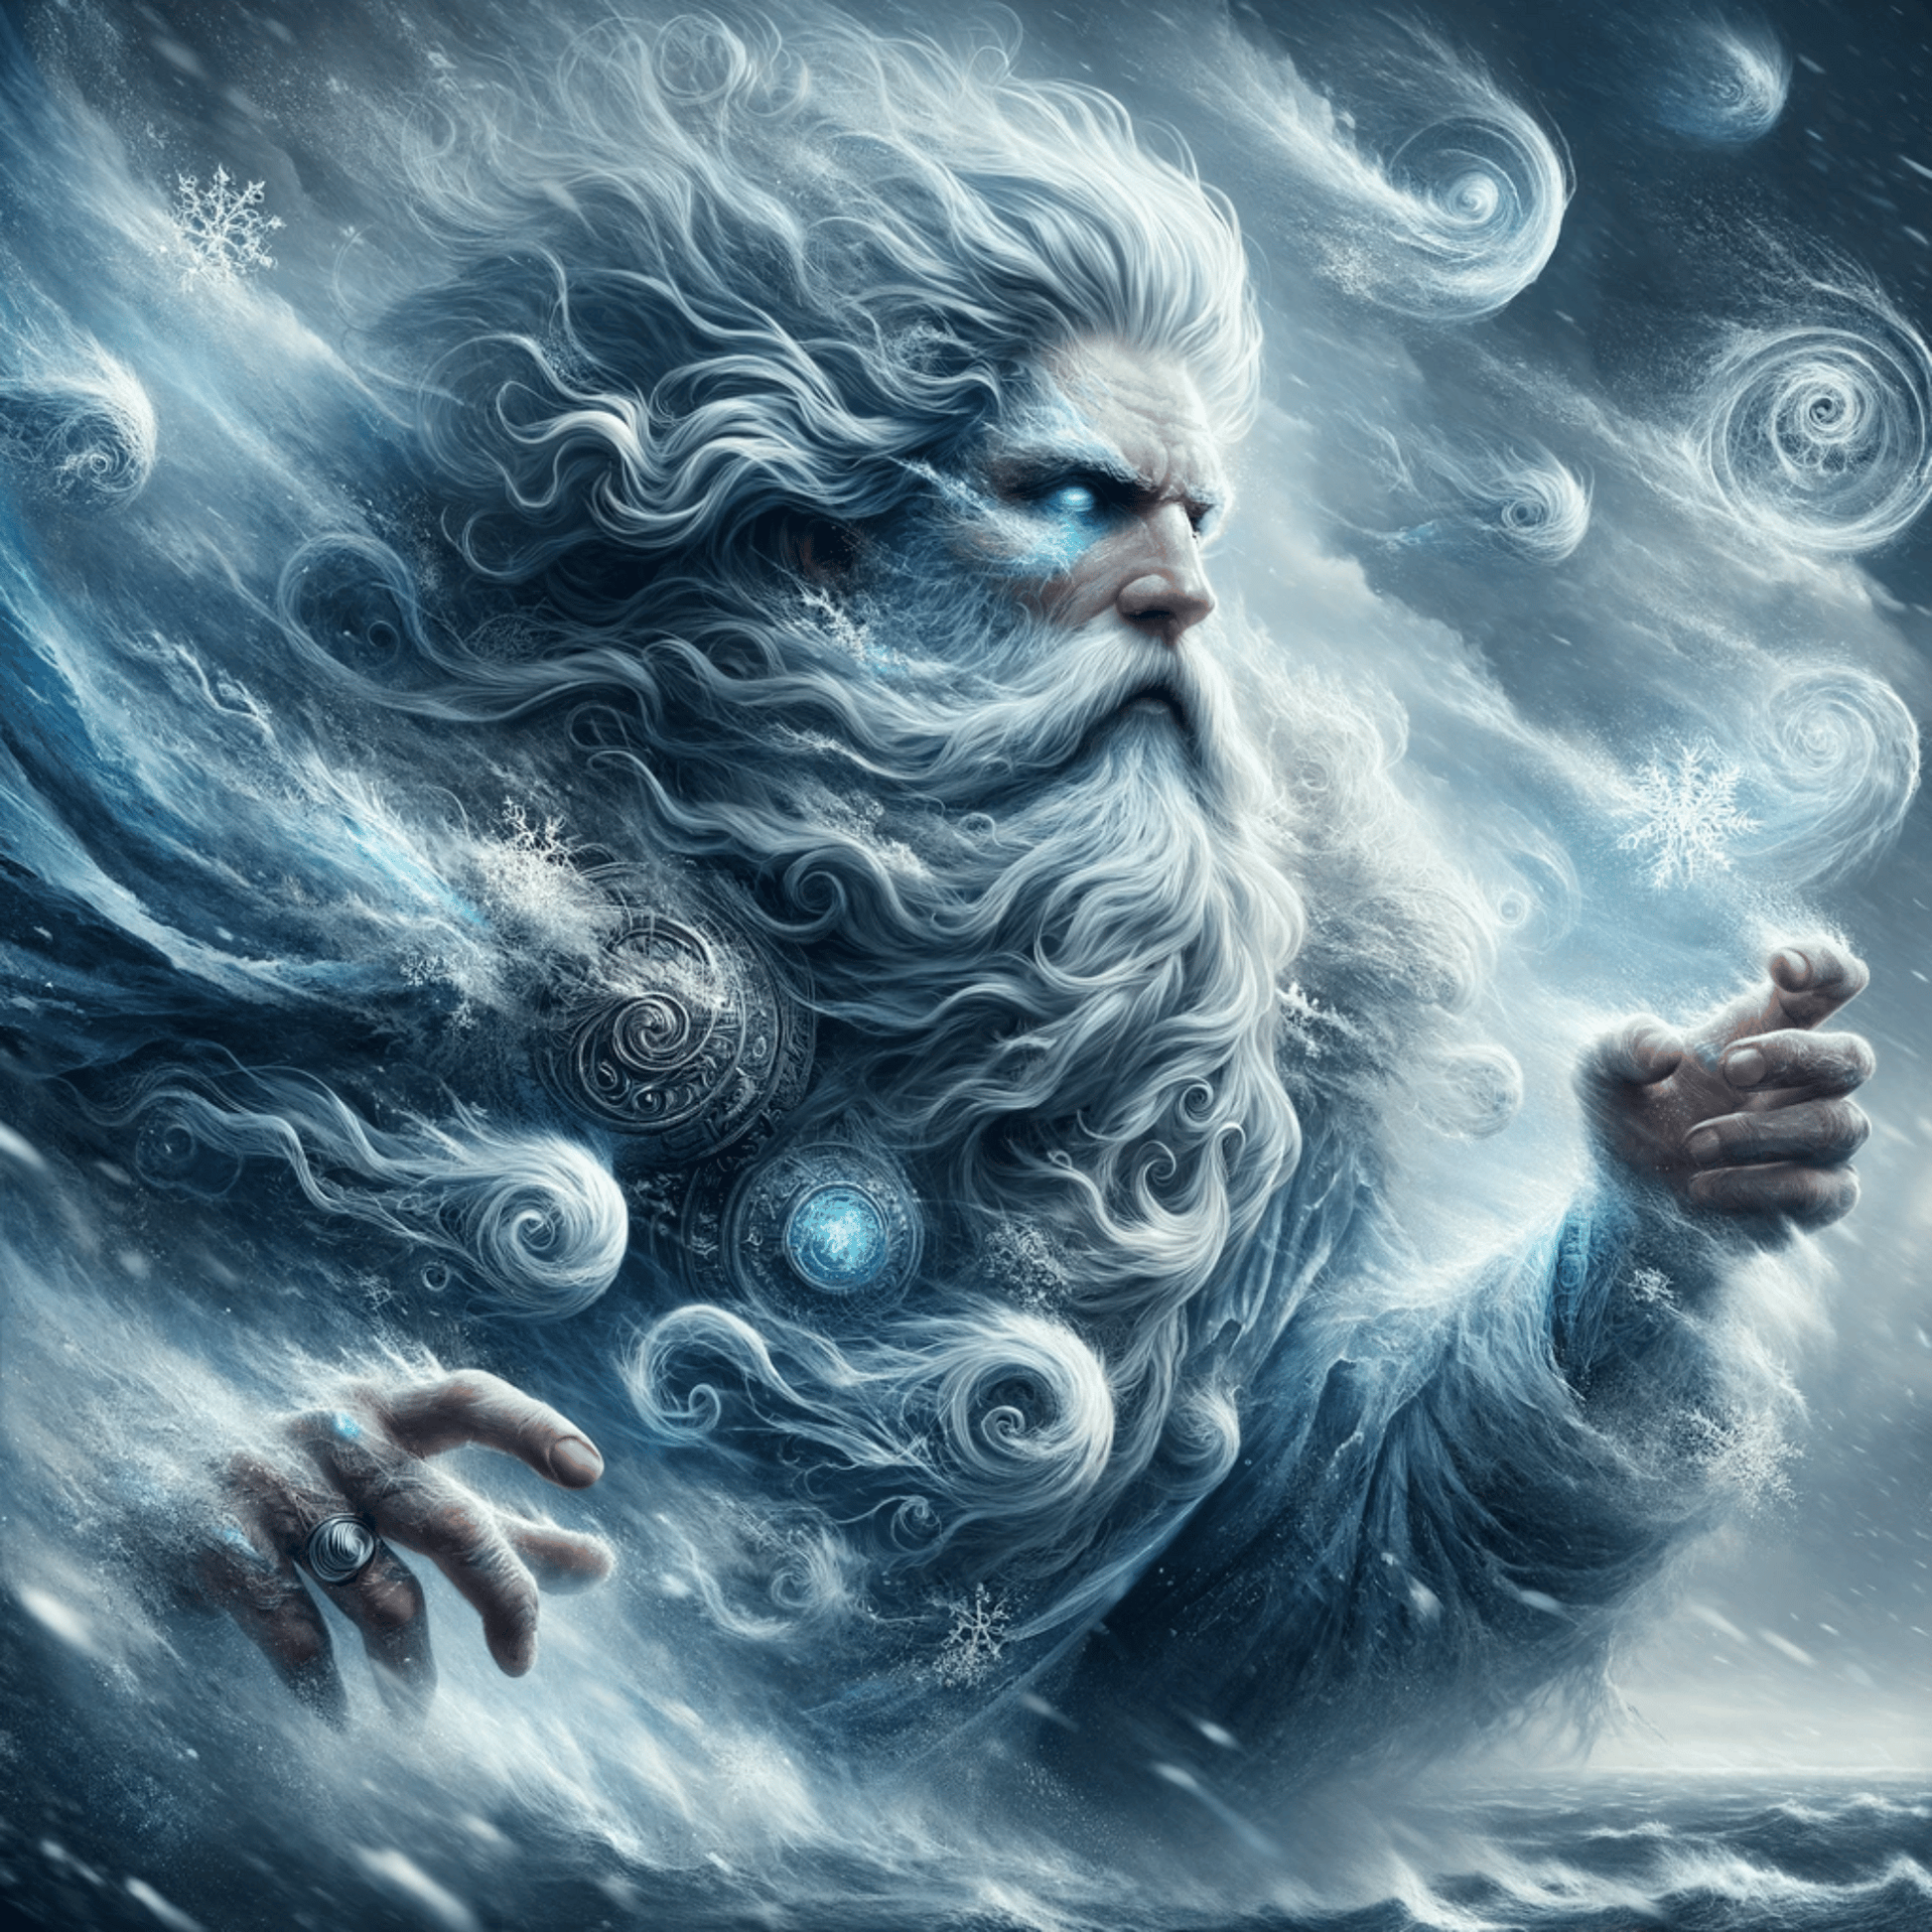 Iskusite moć sjevernog vjetra: umjetnost grčkog boga Boreja - Abraxas Amulets® Magic ♾️ Talismani ♾️ Inicijacije